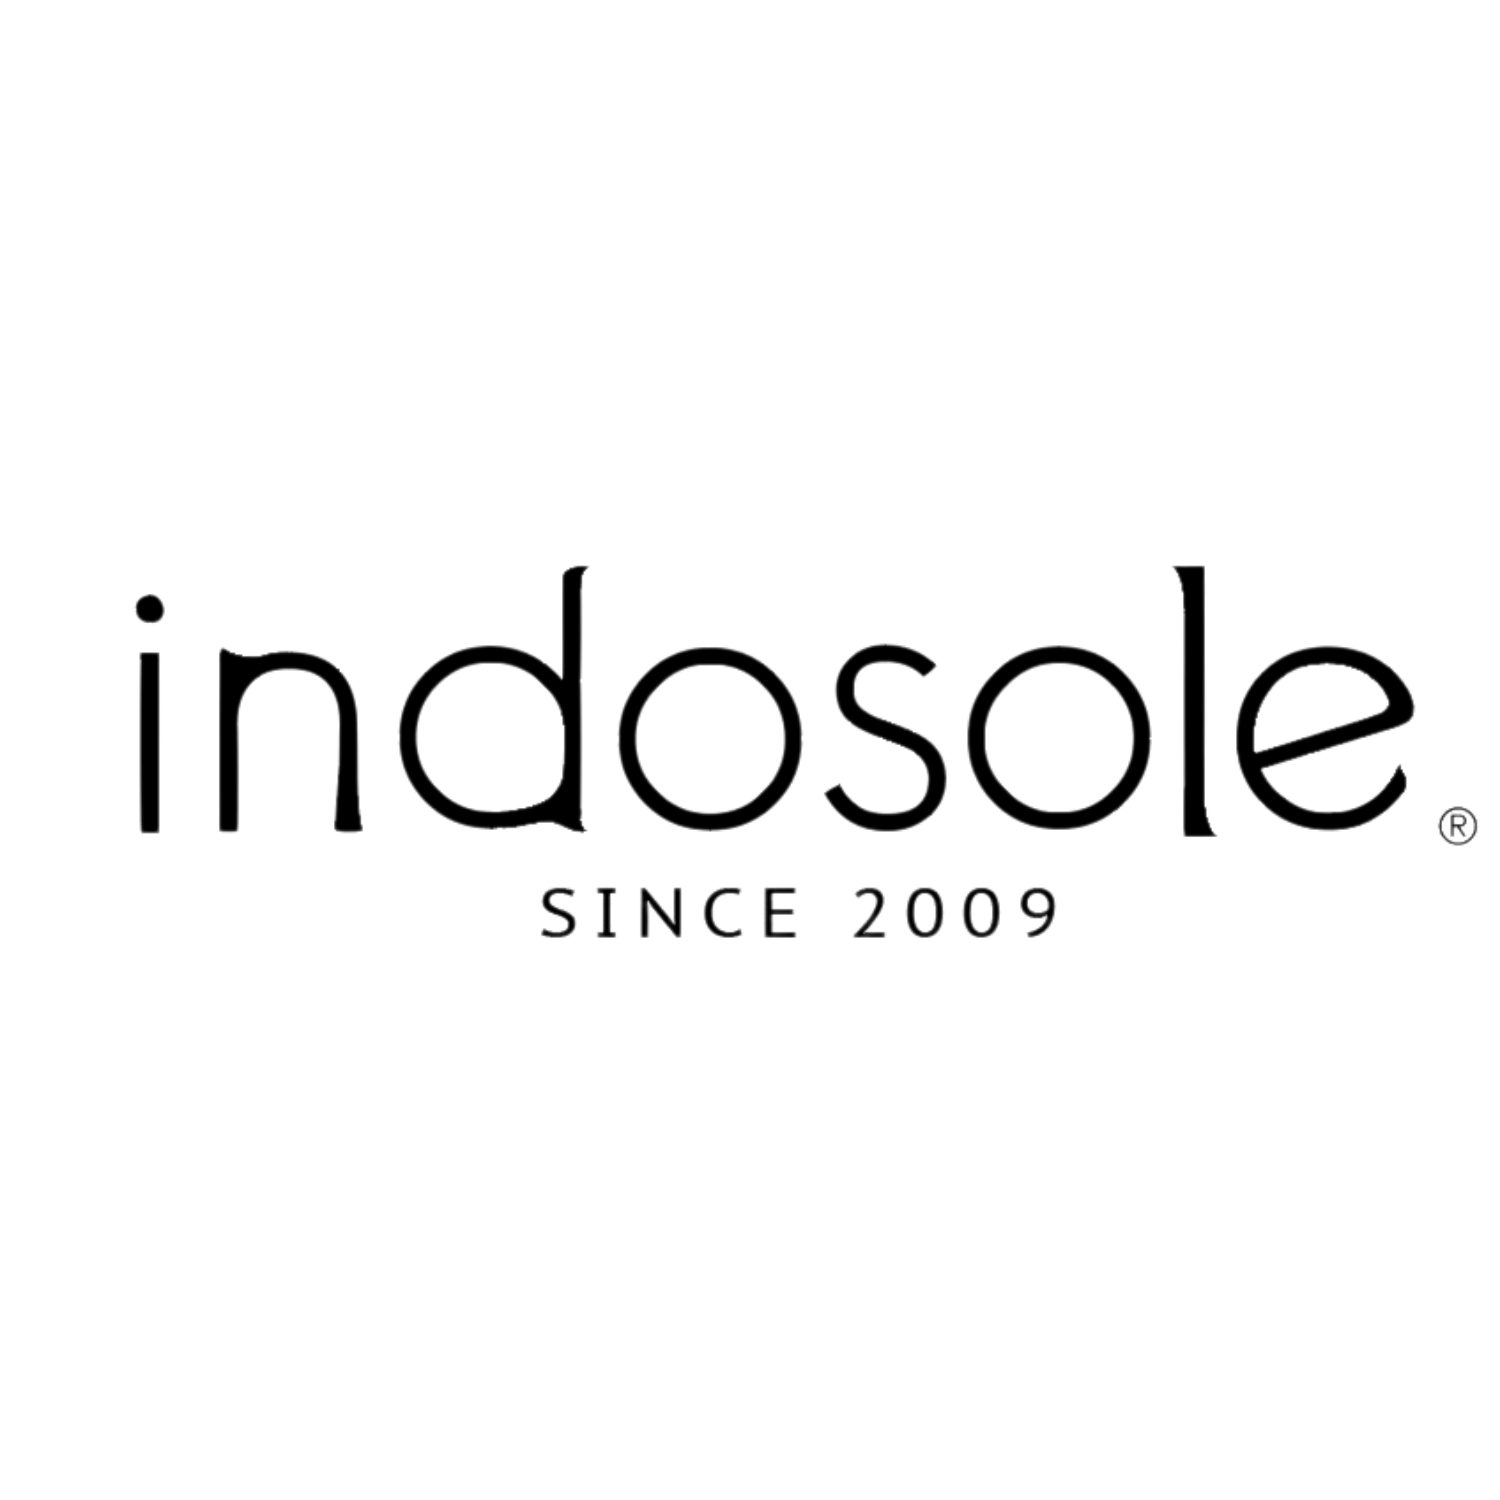 Indosole Logo